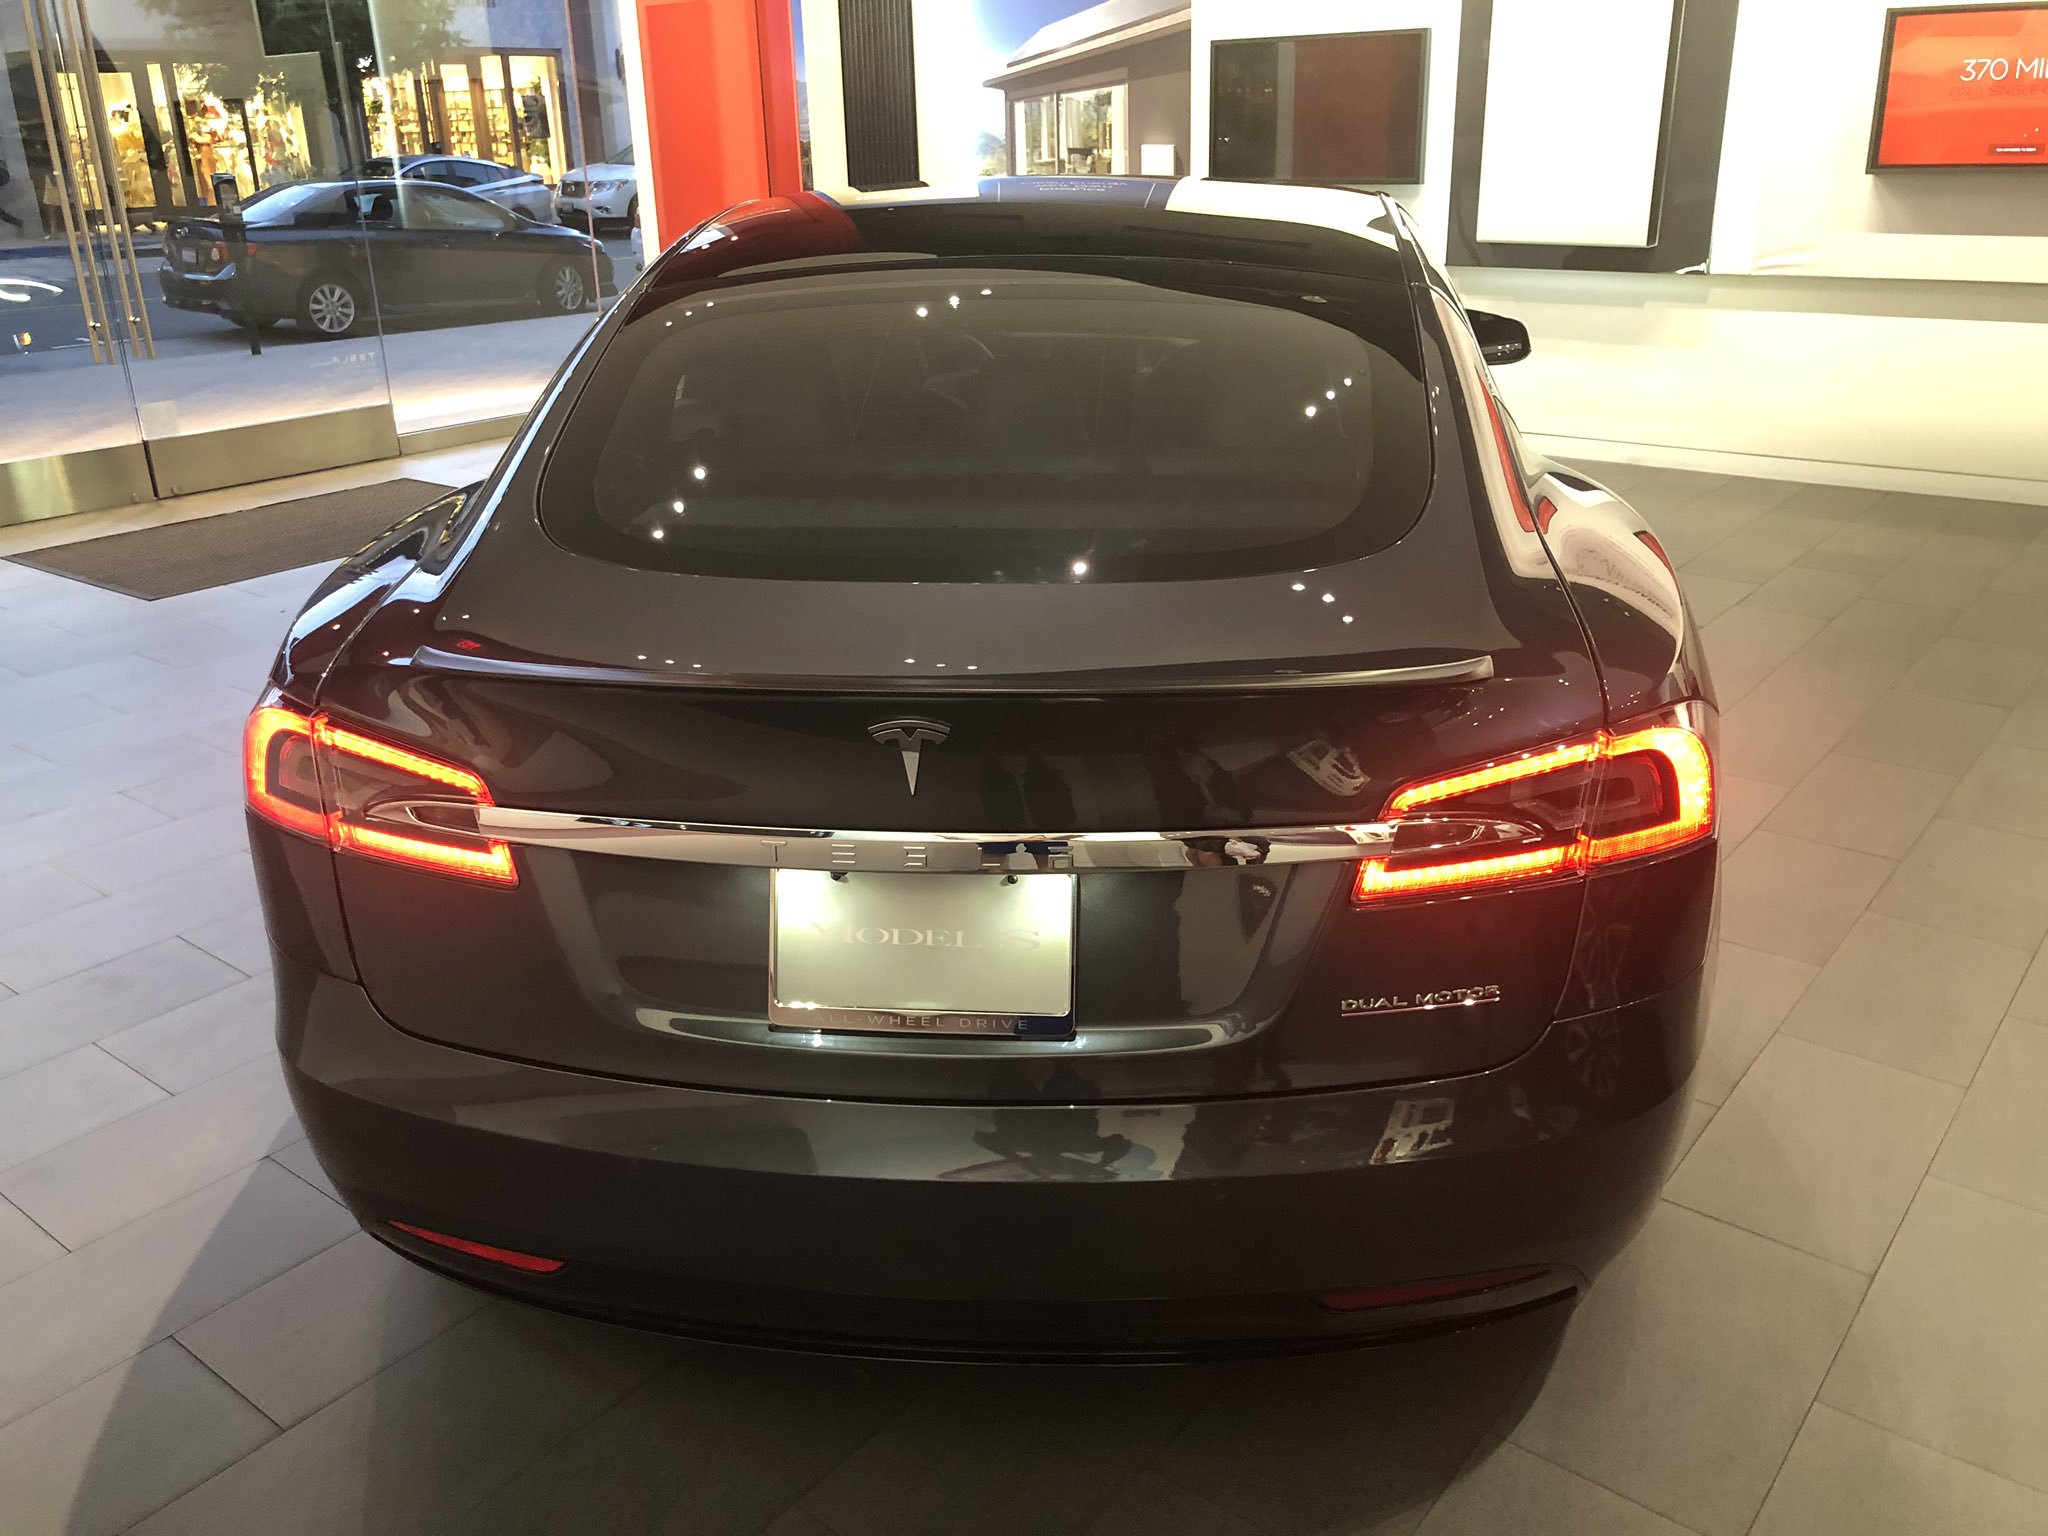 Tesla Raven Model S And Model X